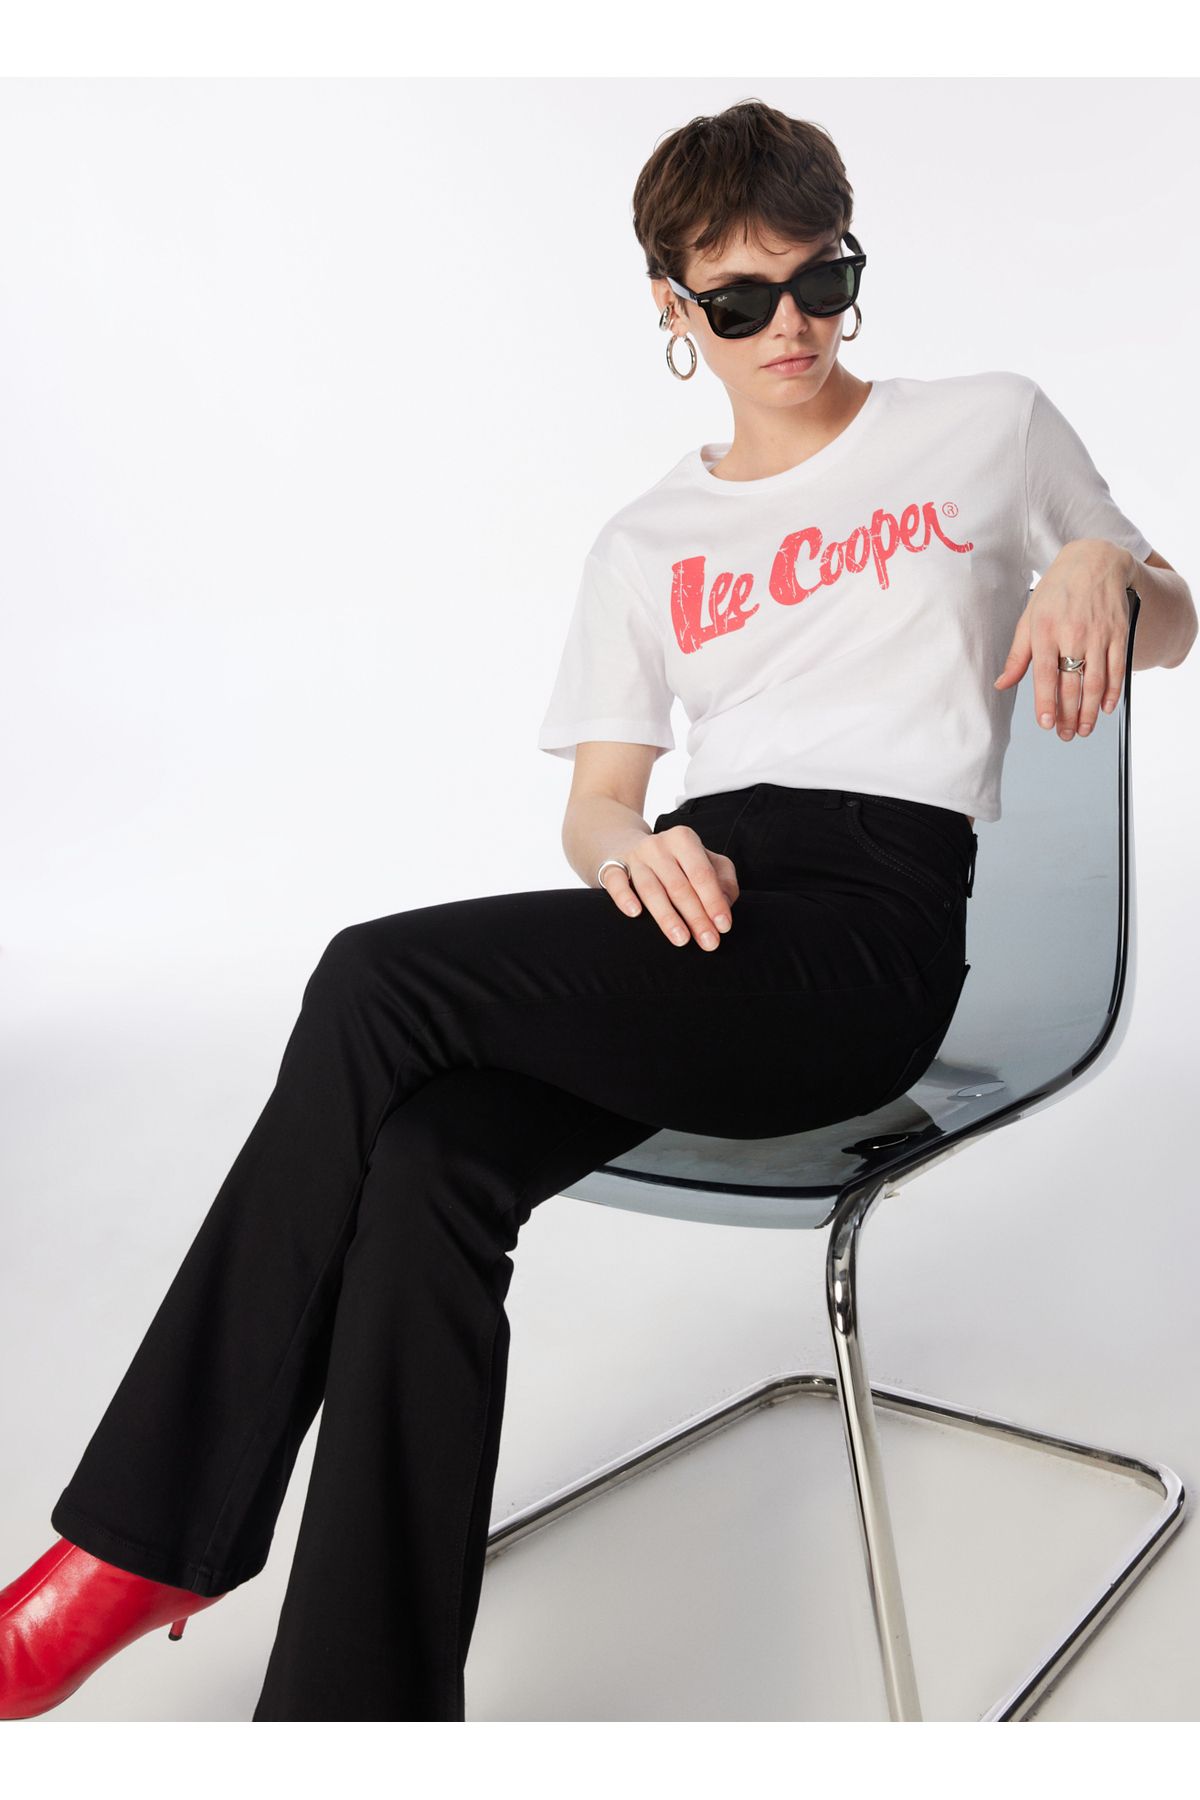 Lee Cooper O Yaka Baskılı Kırık Beyaz Kadın T-Shirt 242 LCF 242005 LONDONLOGO BEYAZ-K